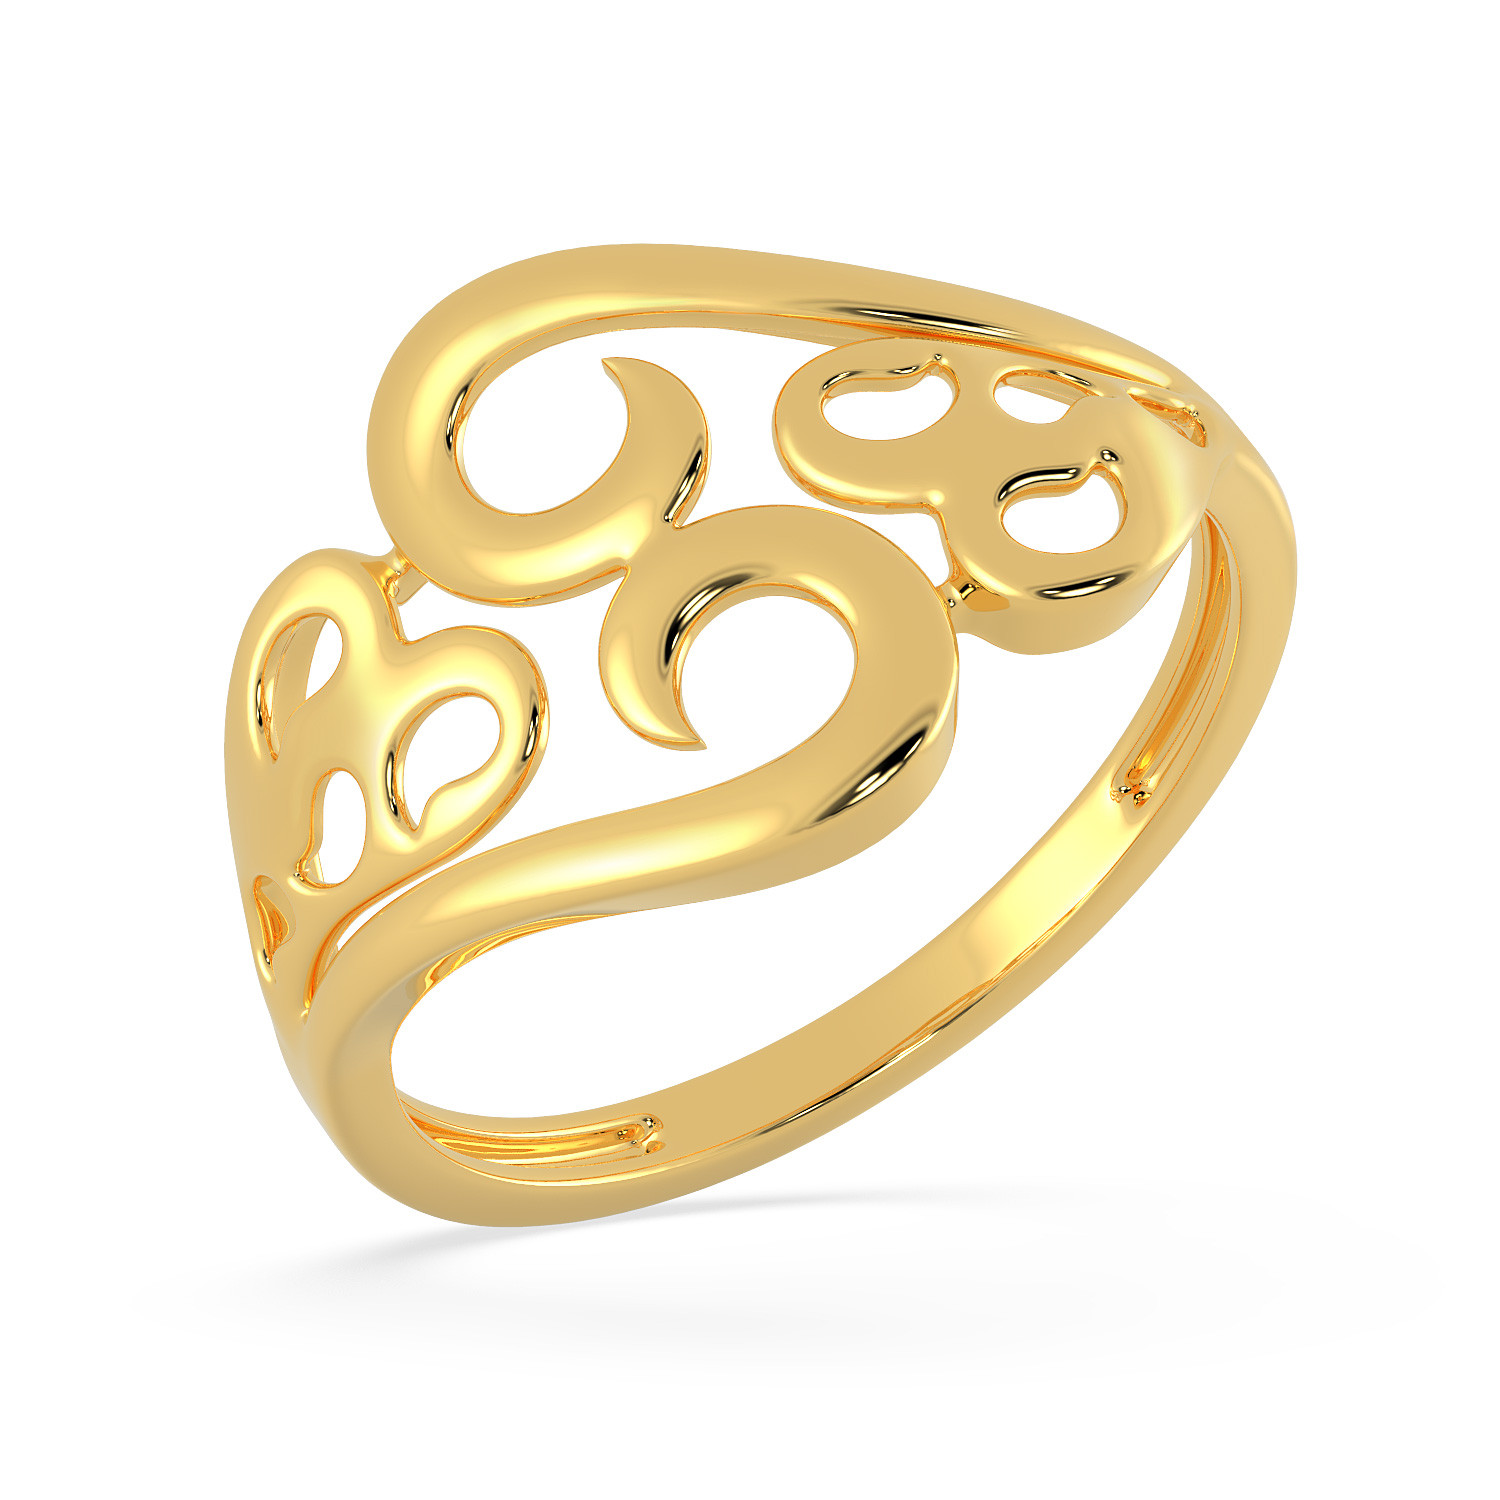 Malabar 22 KT Gold Studded Casual Ring MHAAAAAAEOPS